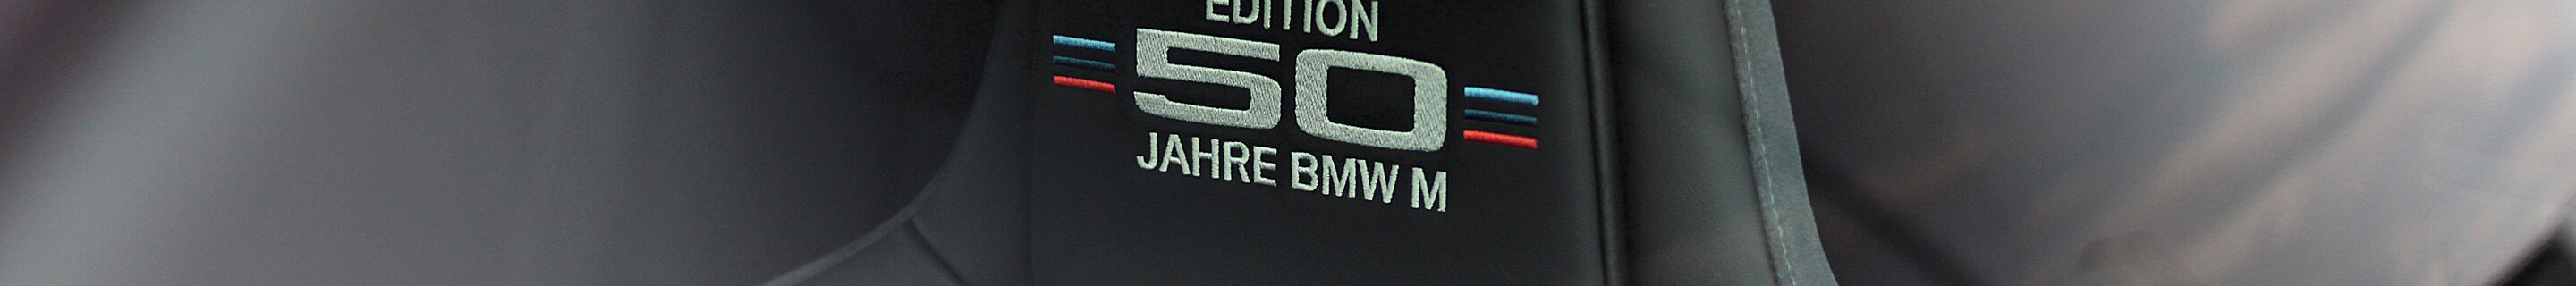 BMW M4 G82 Coupé Edition 50 Jahre BMW M